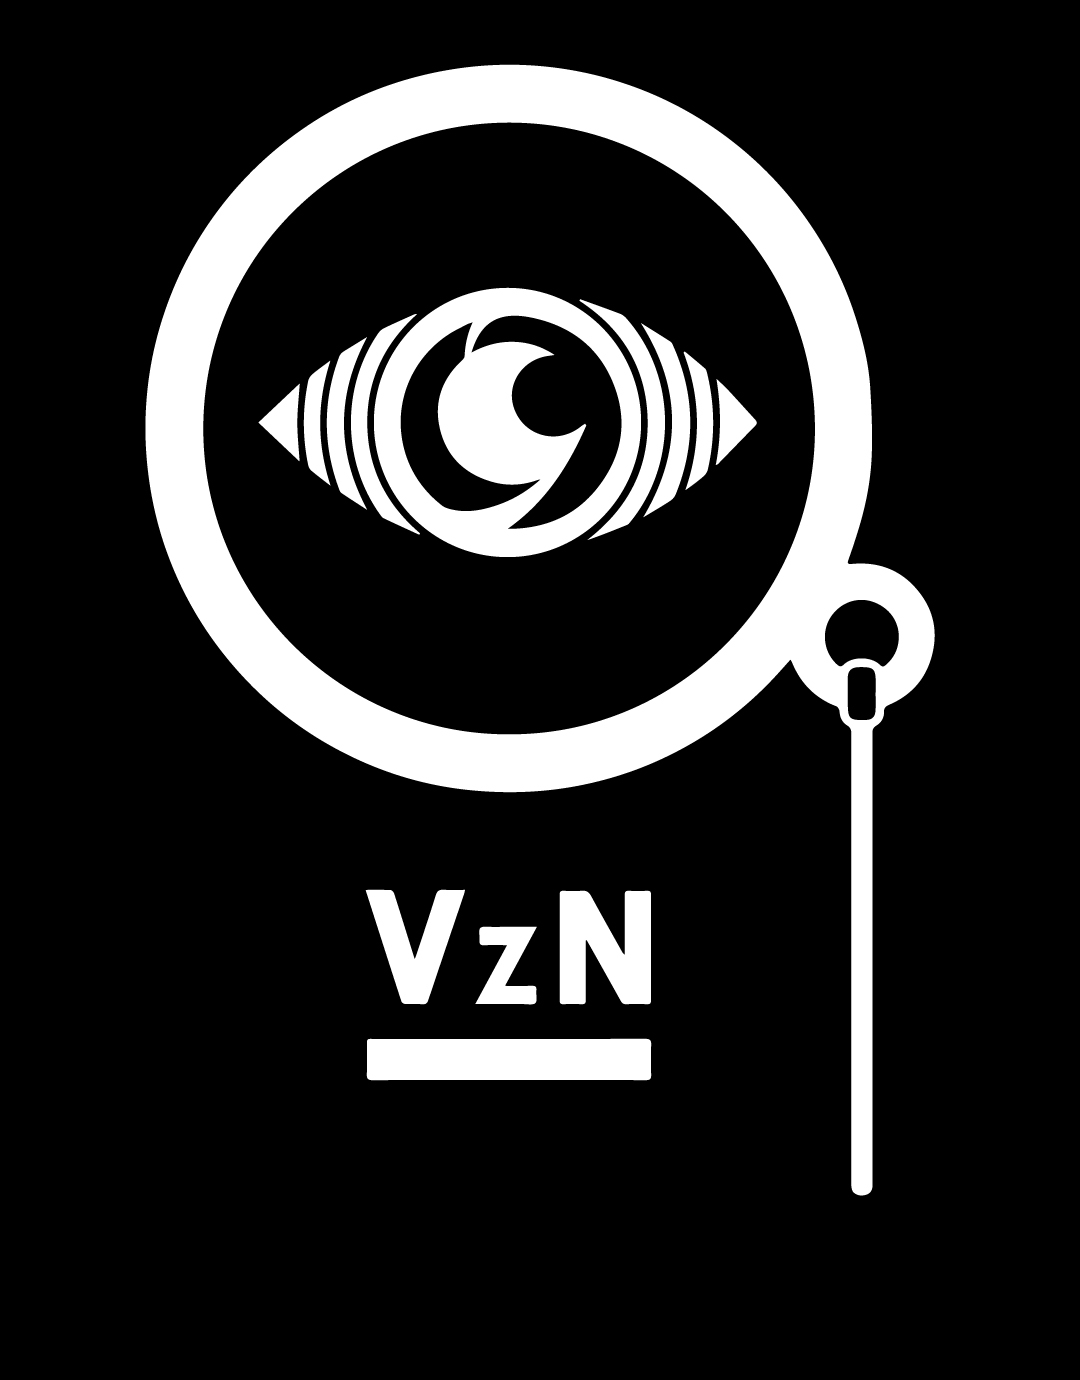 vzn logo bw.jpg